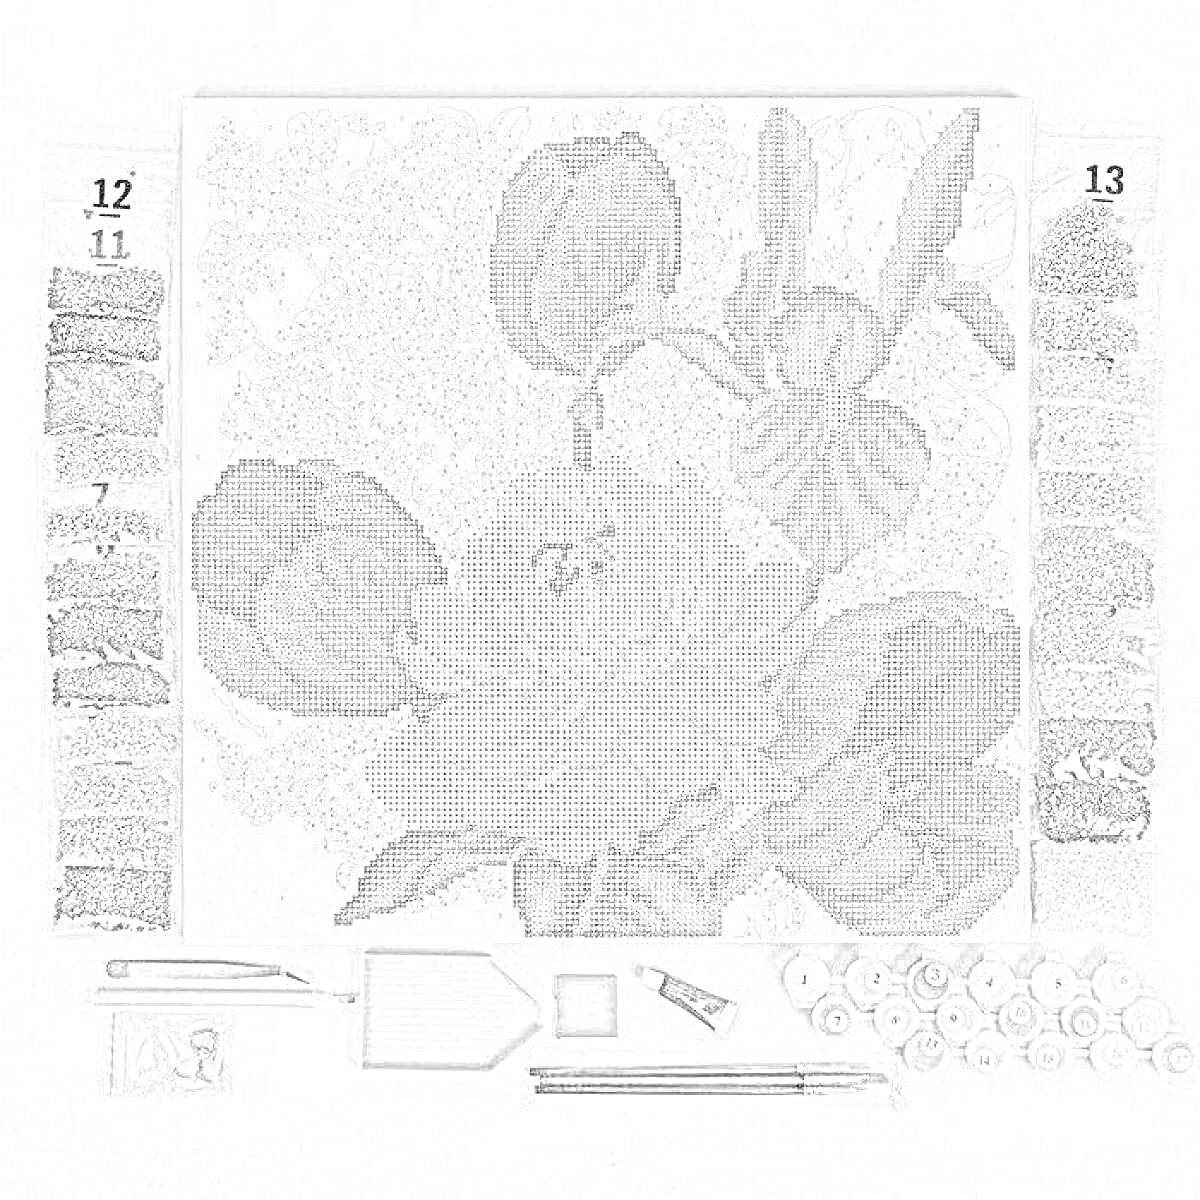 Раскраска Комплект для создания алмазной мозаики с изображением крупного цветка и бутонов, окруженных листьями; комплект включает в себя холст с нанесенным изображением, инструменты для выкладки (пинцет, стилус, лоток), а также пронумерованные контейнеры с цветными